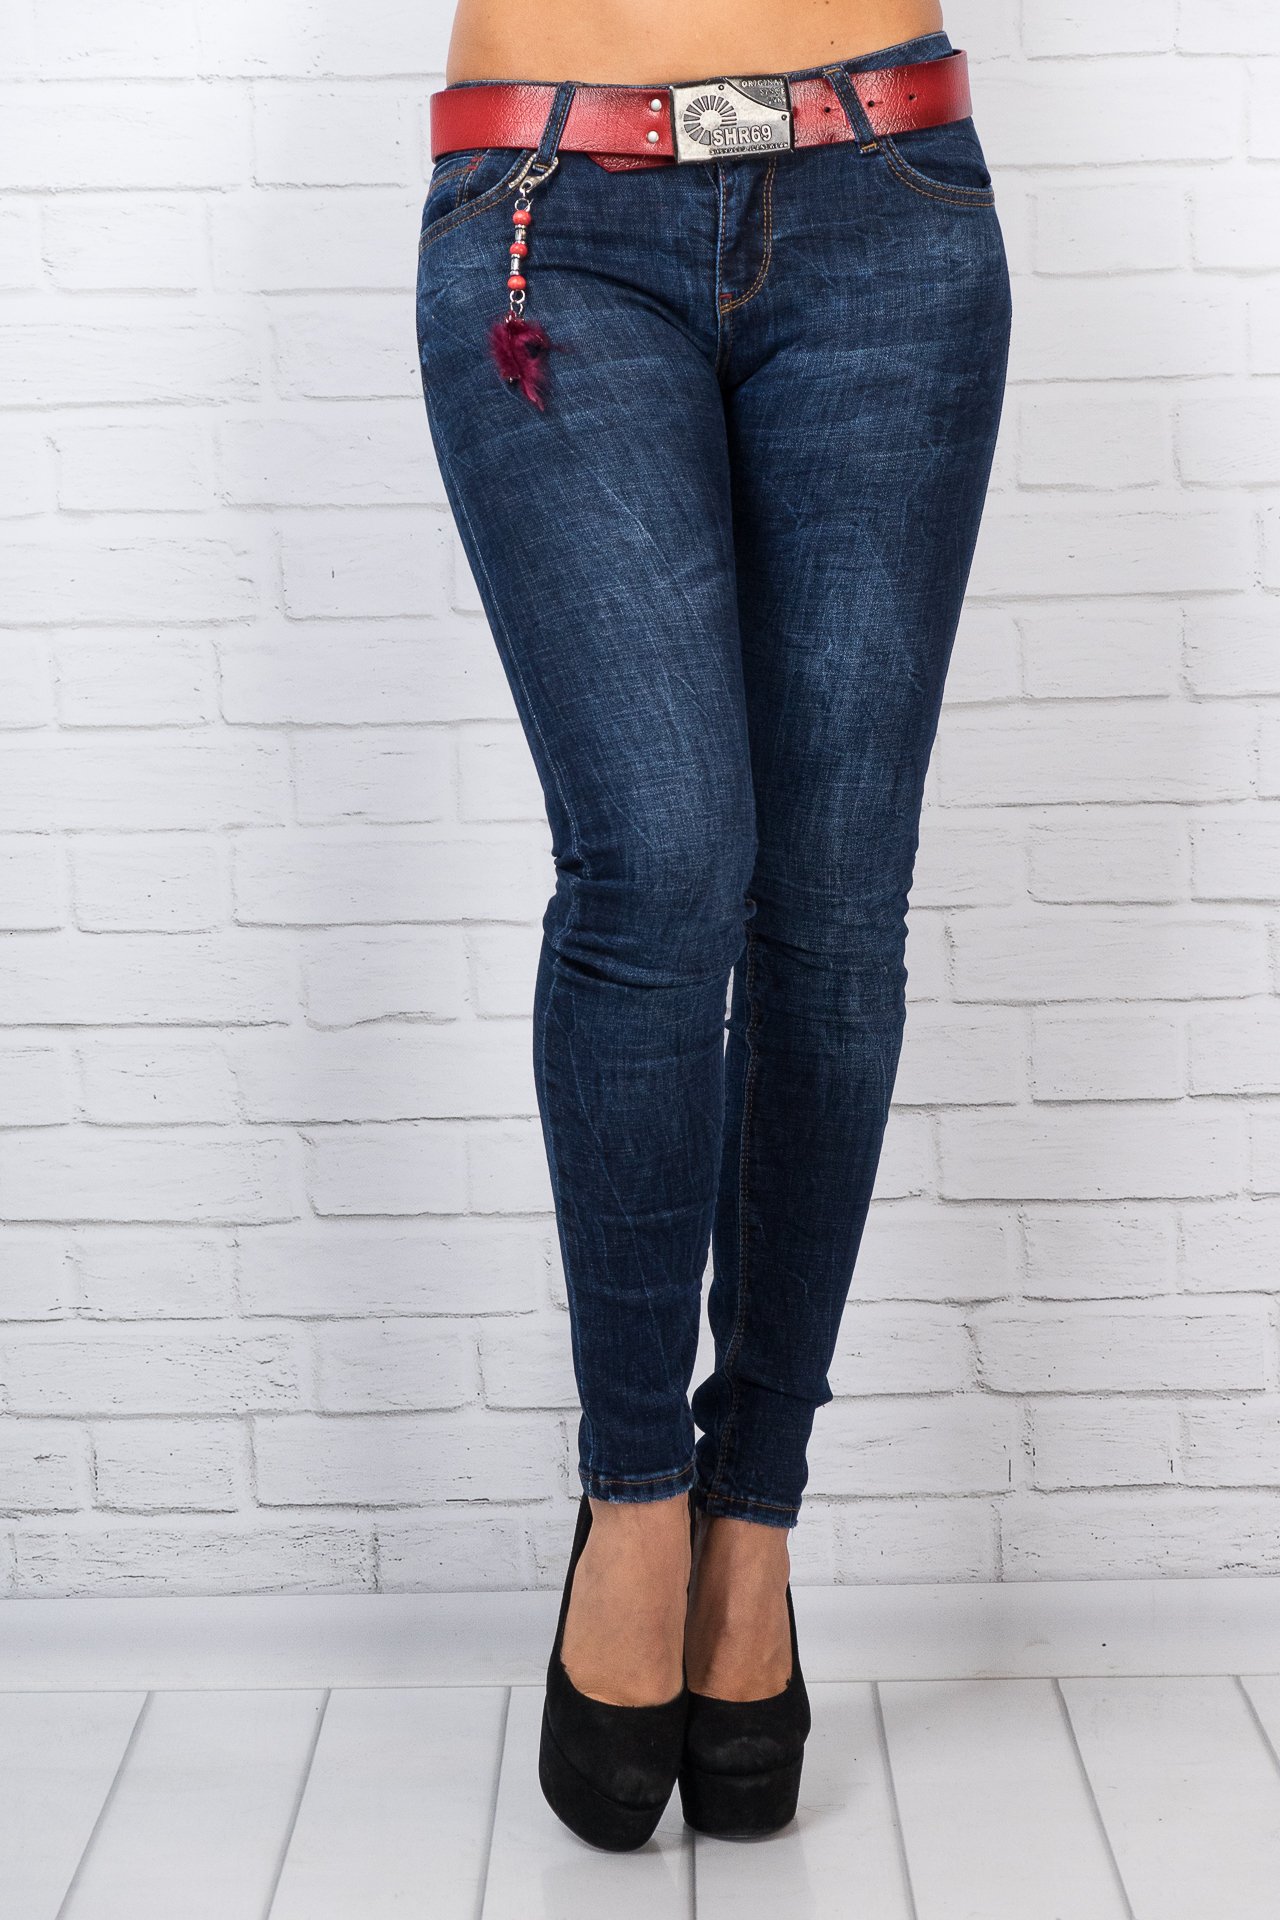 Купить джинсы 48 размера. Джинсы женские. Фирменные джинсы женские. Брендовые джинсы женские. Классные джинсы женские.